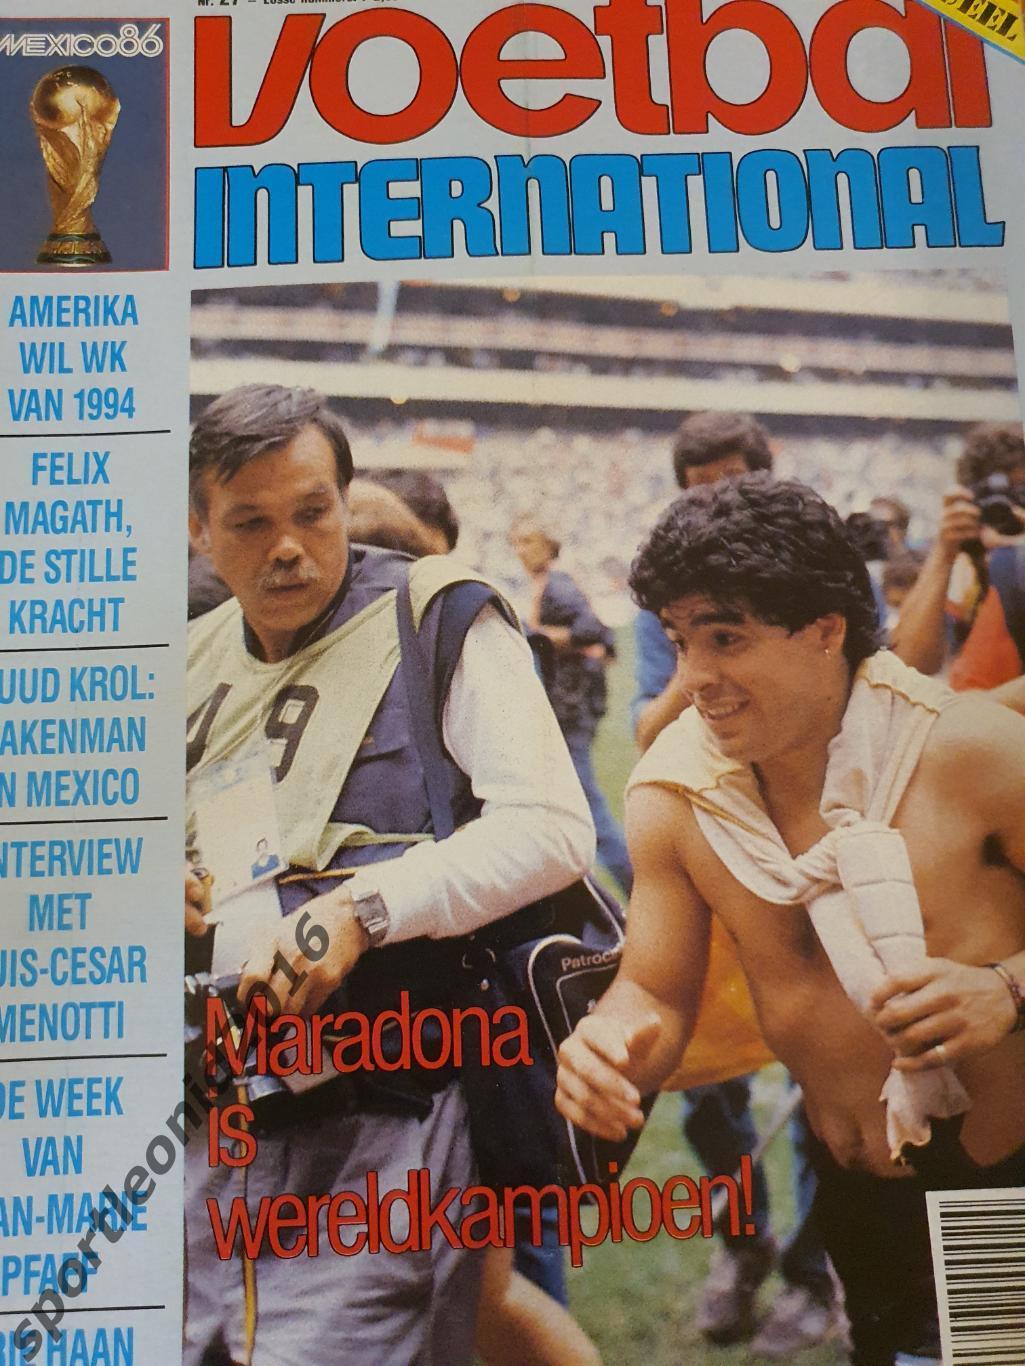 Voetbal International 1986.14 топ выпусков.В том числе итоговые к ЧМ-86.2 1